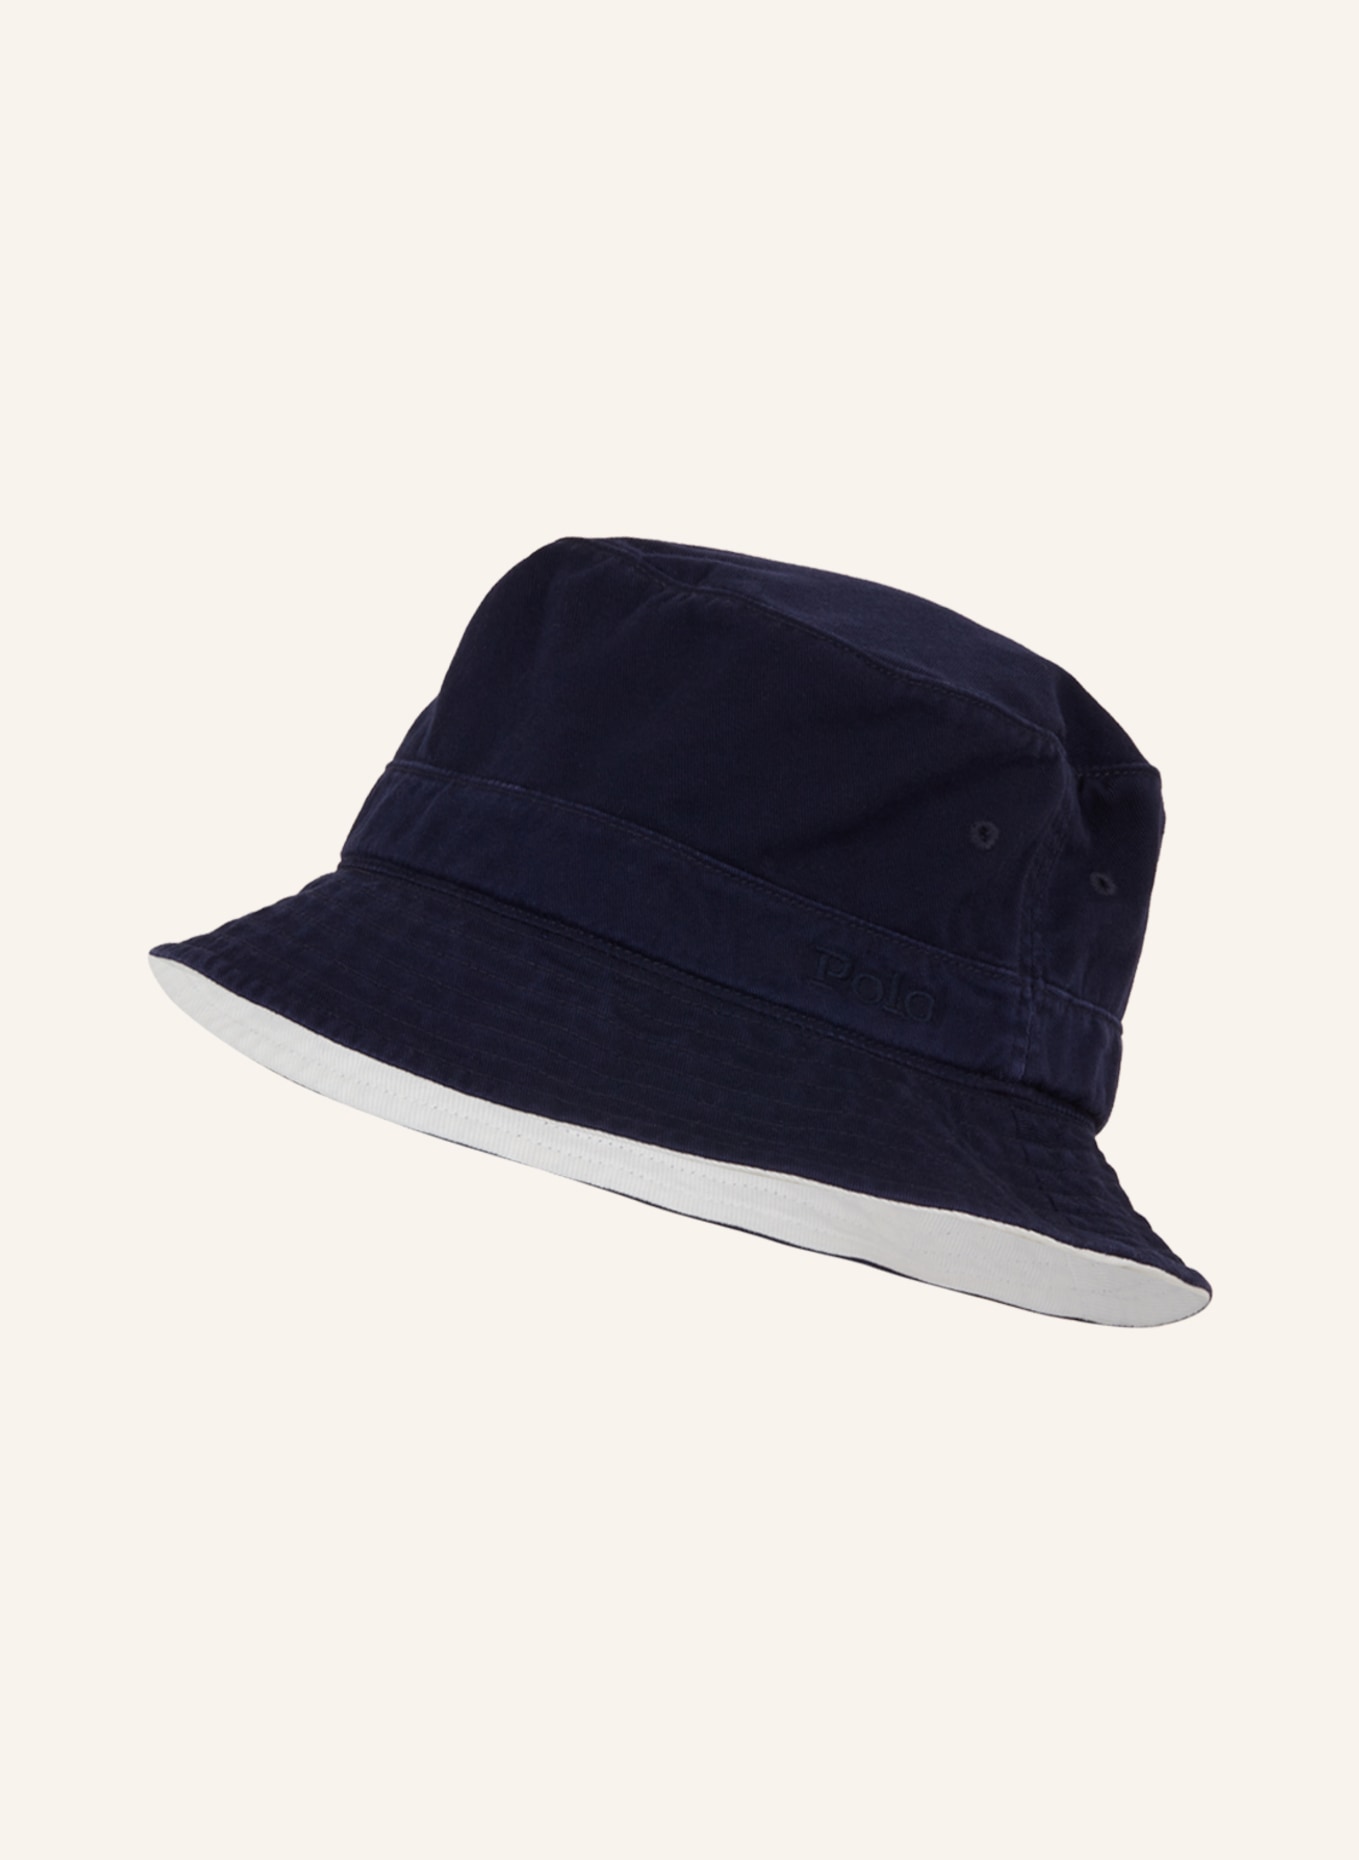 POLO RALPH LAUREN Bucket hat, Color: DARK BLUE (Image 1)